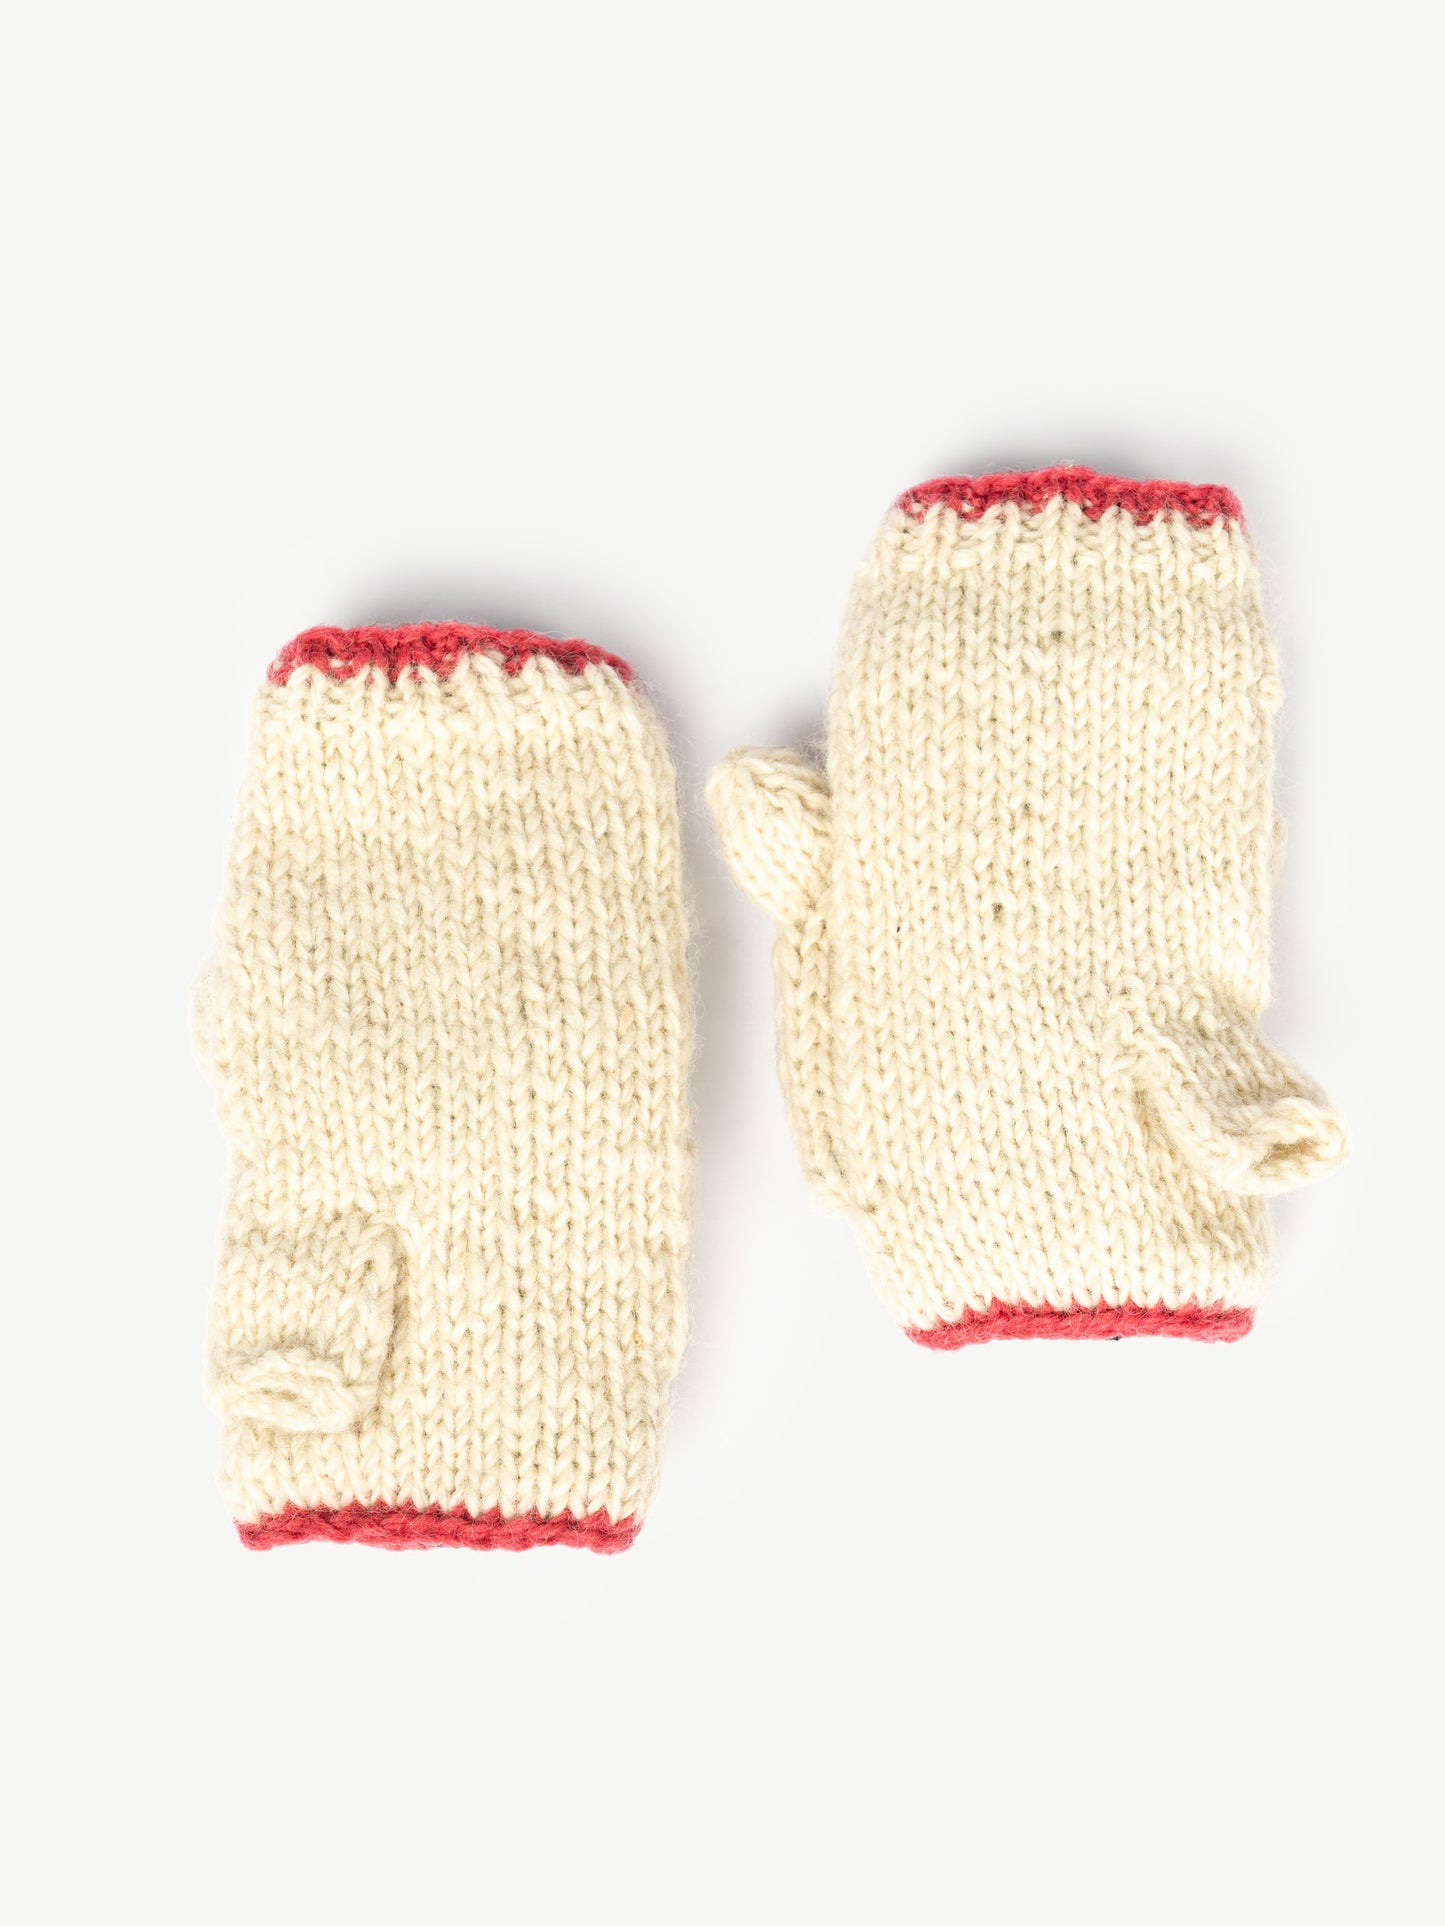 Cute Cat Woolen Mittens/Gloves